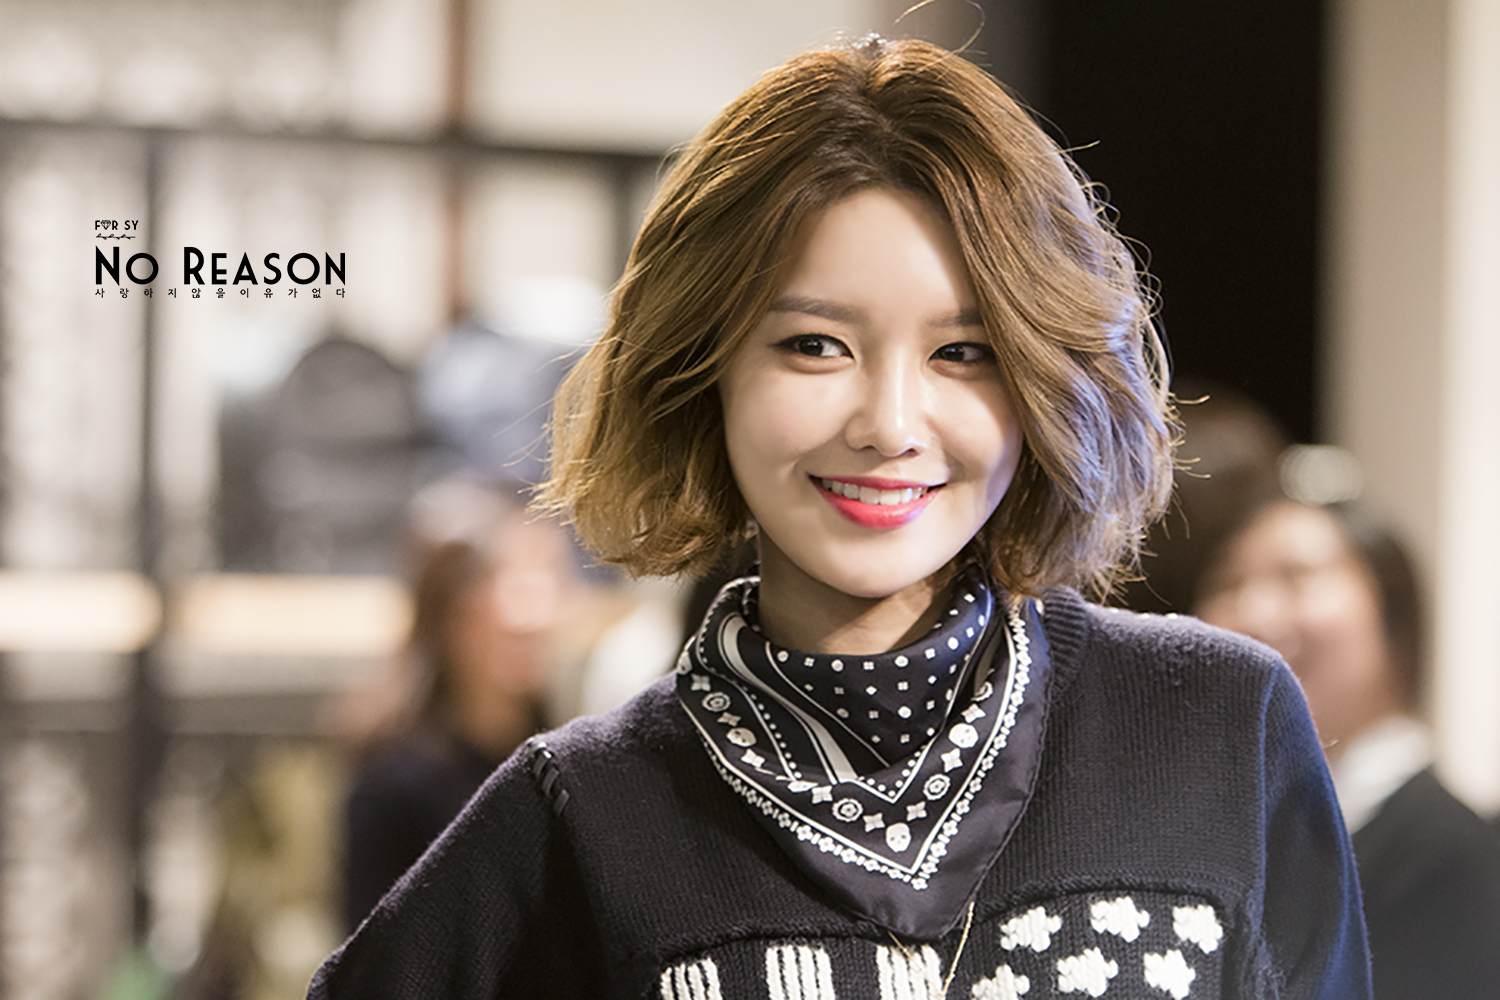  [PIC][27-11-2015]SooYoung tham dự buổi Fansign cho thương hiệu "COACH" tại Lotte Department Store Busan vào trưa nay 22795552653_705e570c77_o